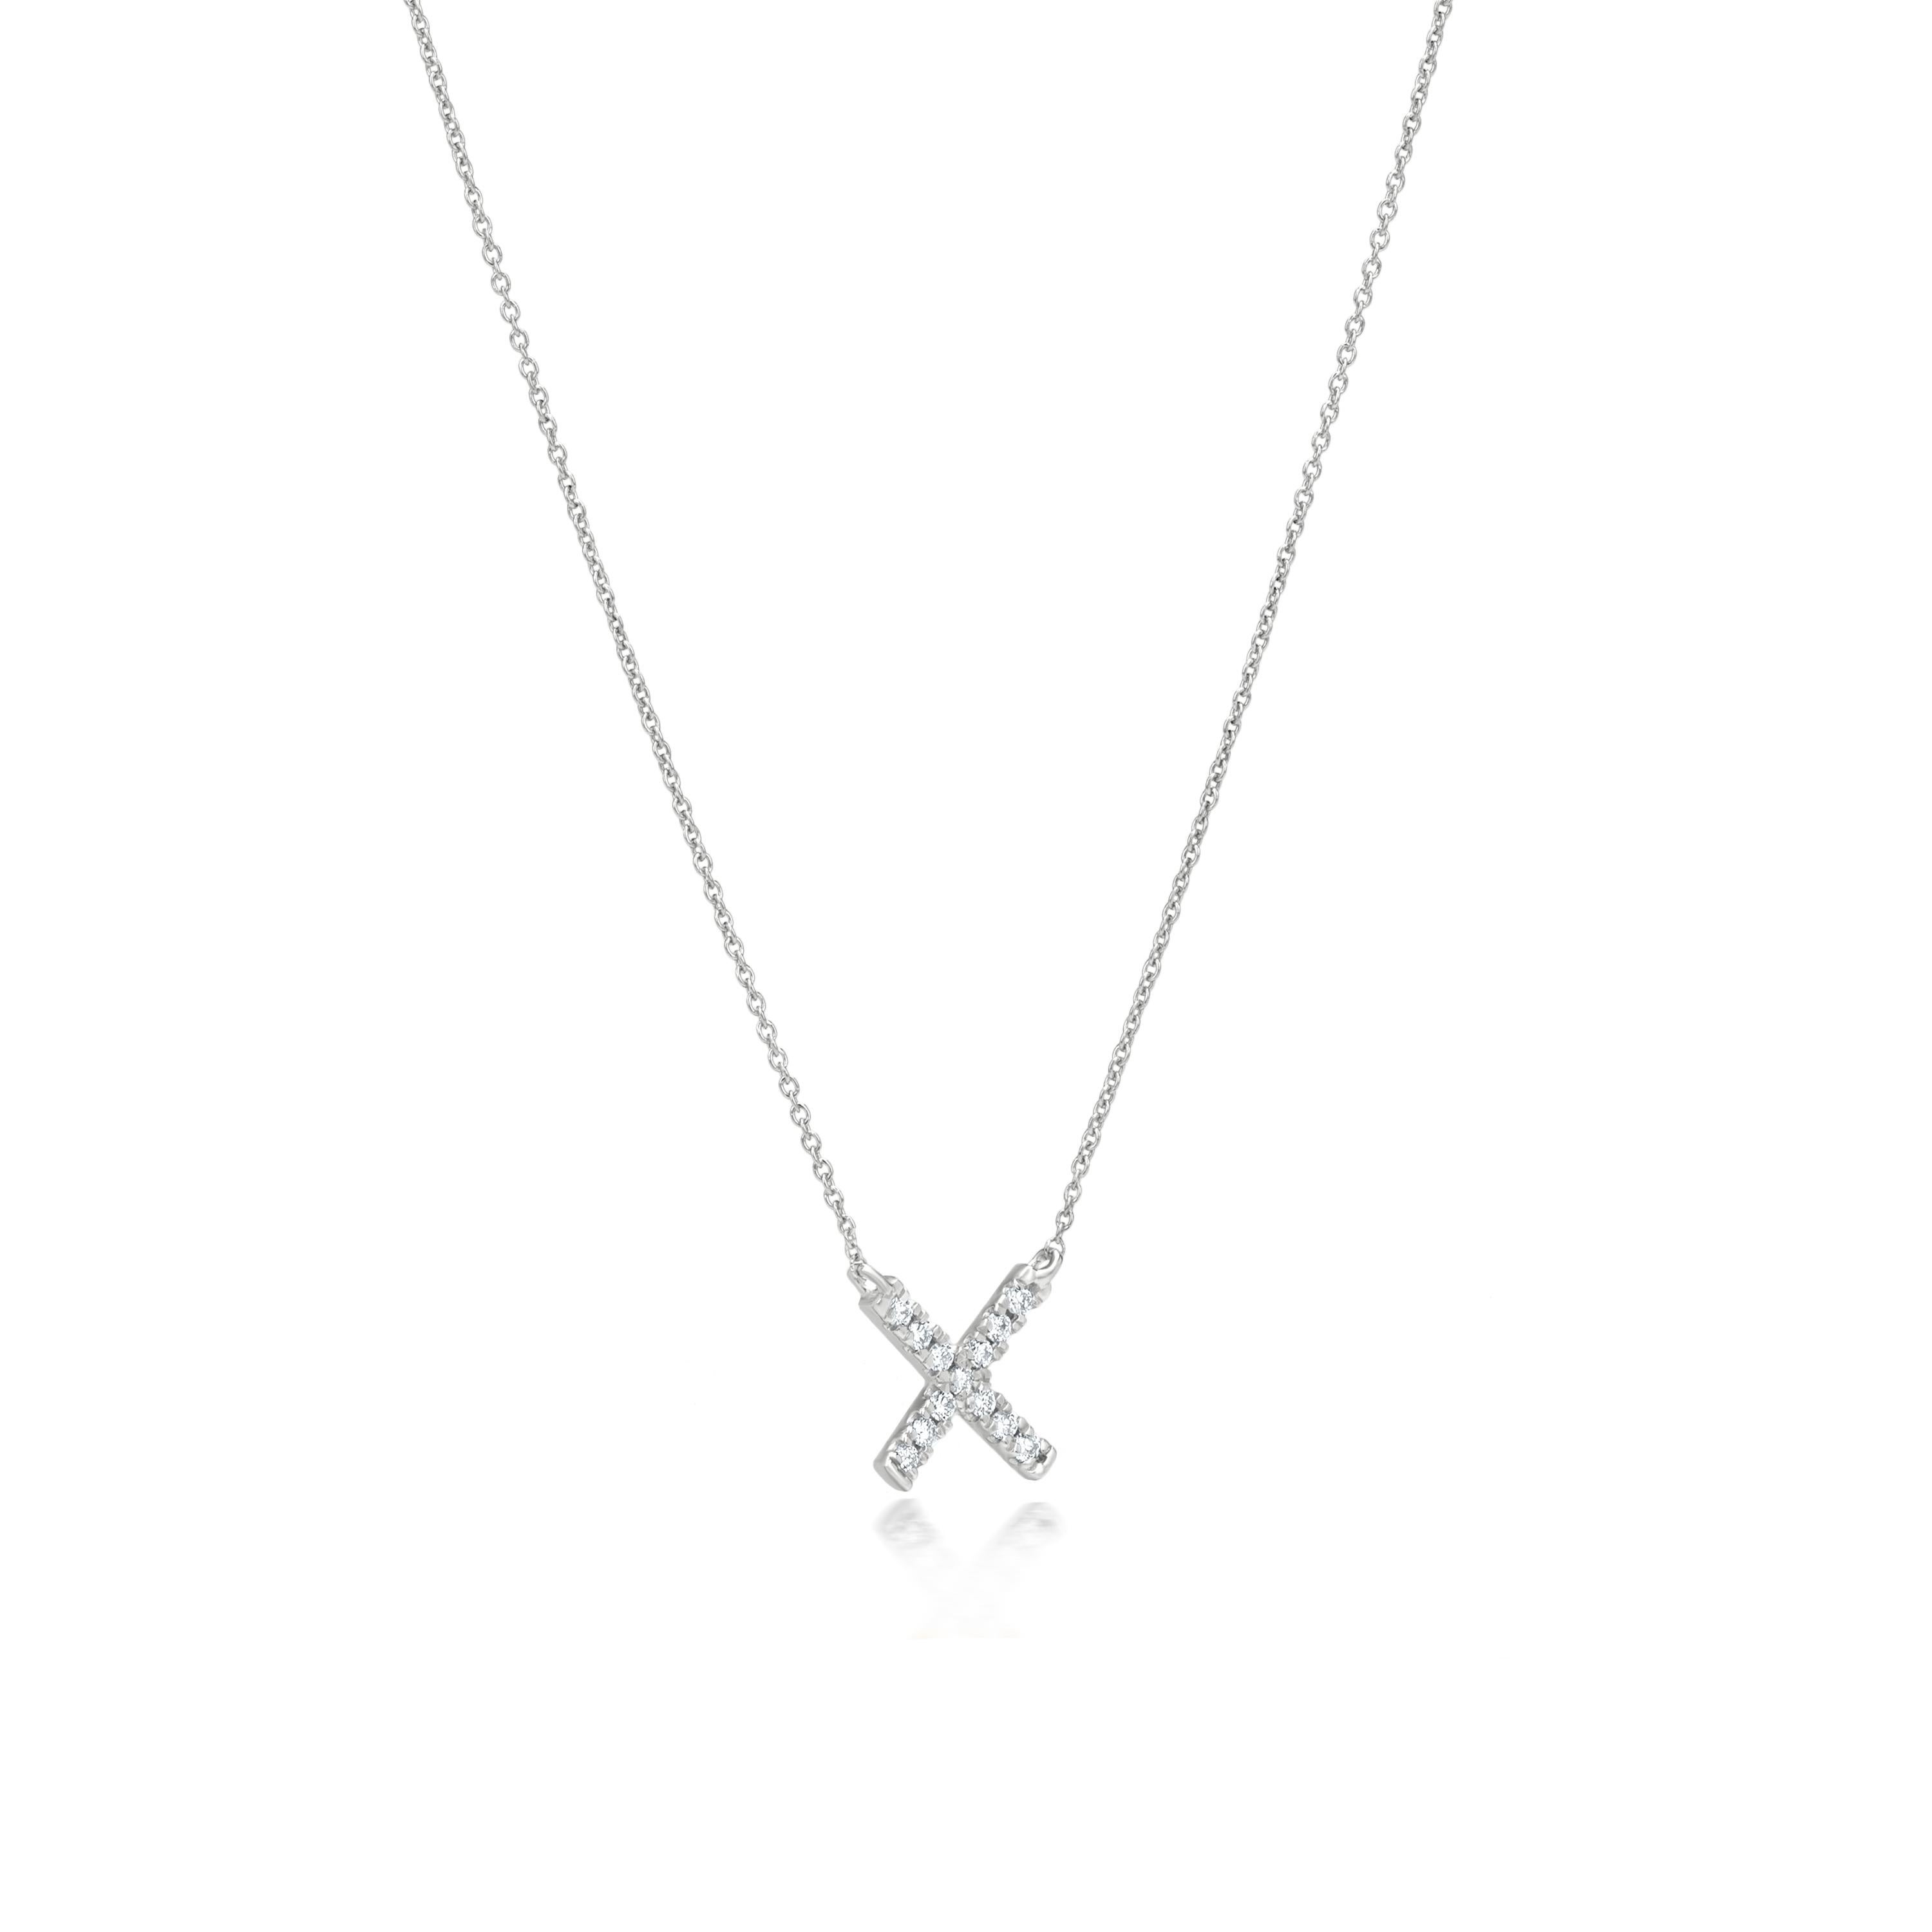 Contemporary Luxle Diamond x Pendant Necklace in 18k White Gold